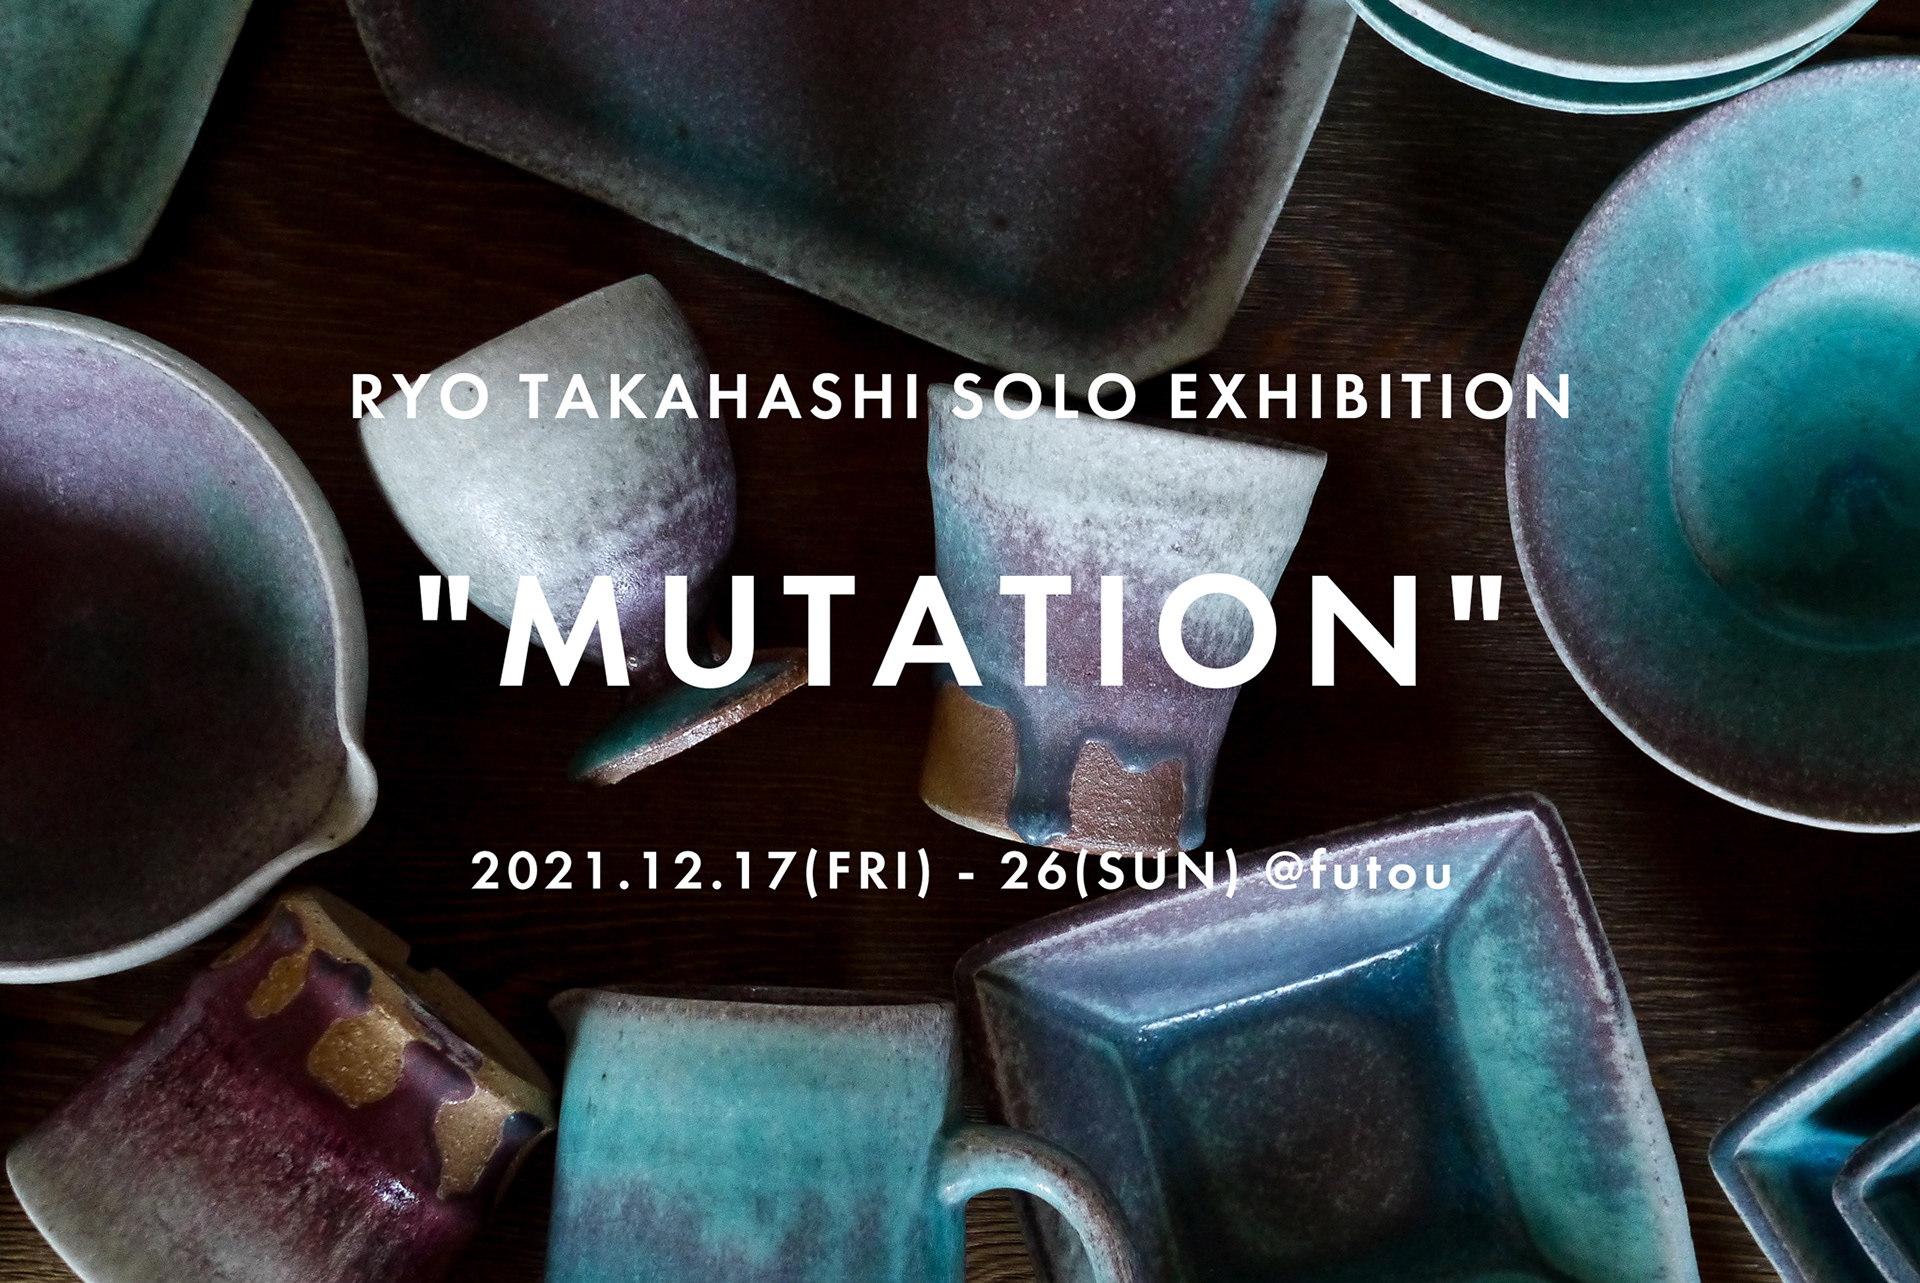 【2021.12.17-26】高橋燎陶展「mutation」を開催しています。